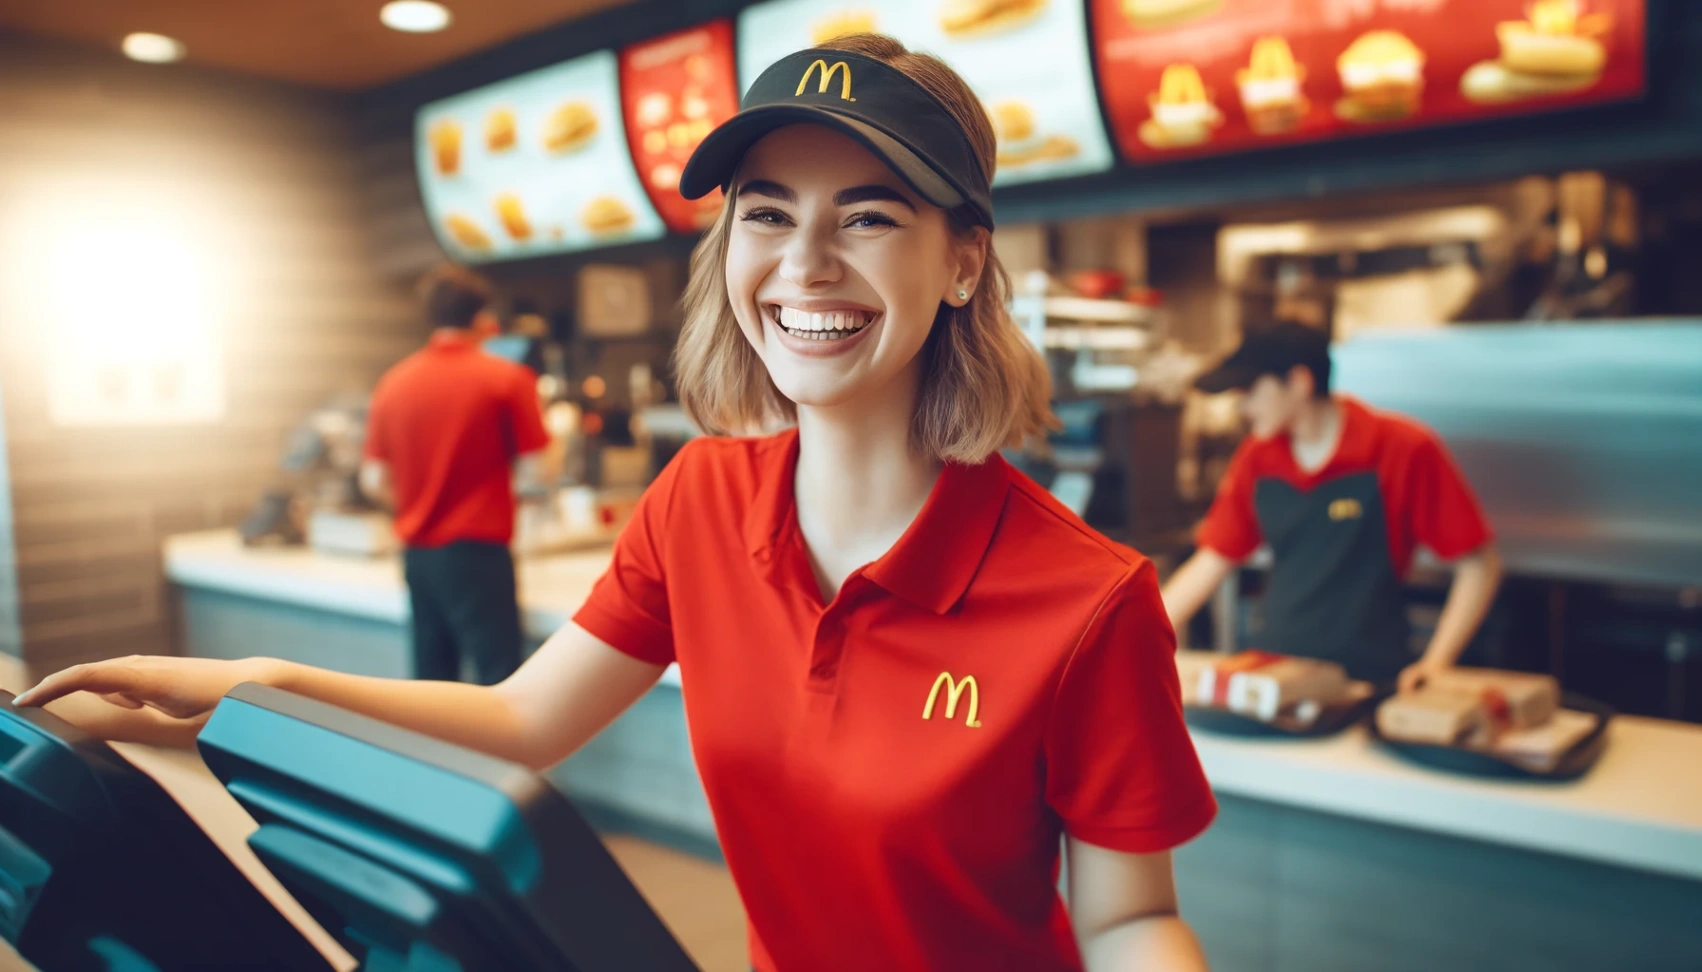 McDonald's jobbsøknad: Din vei til spennende muligheter